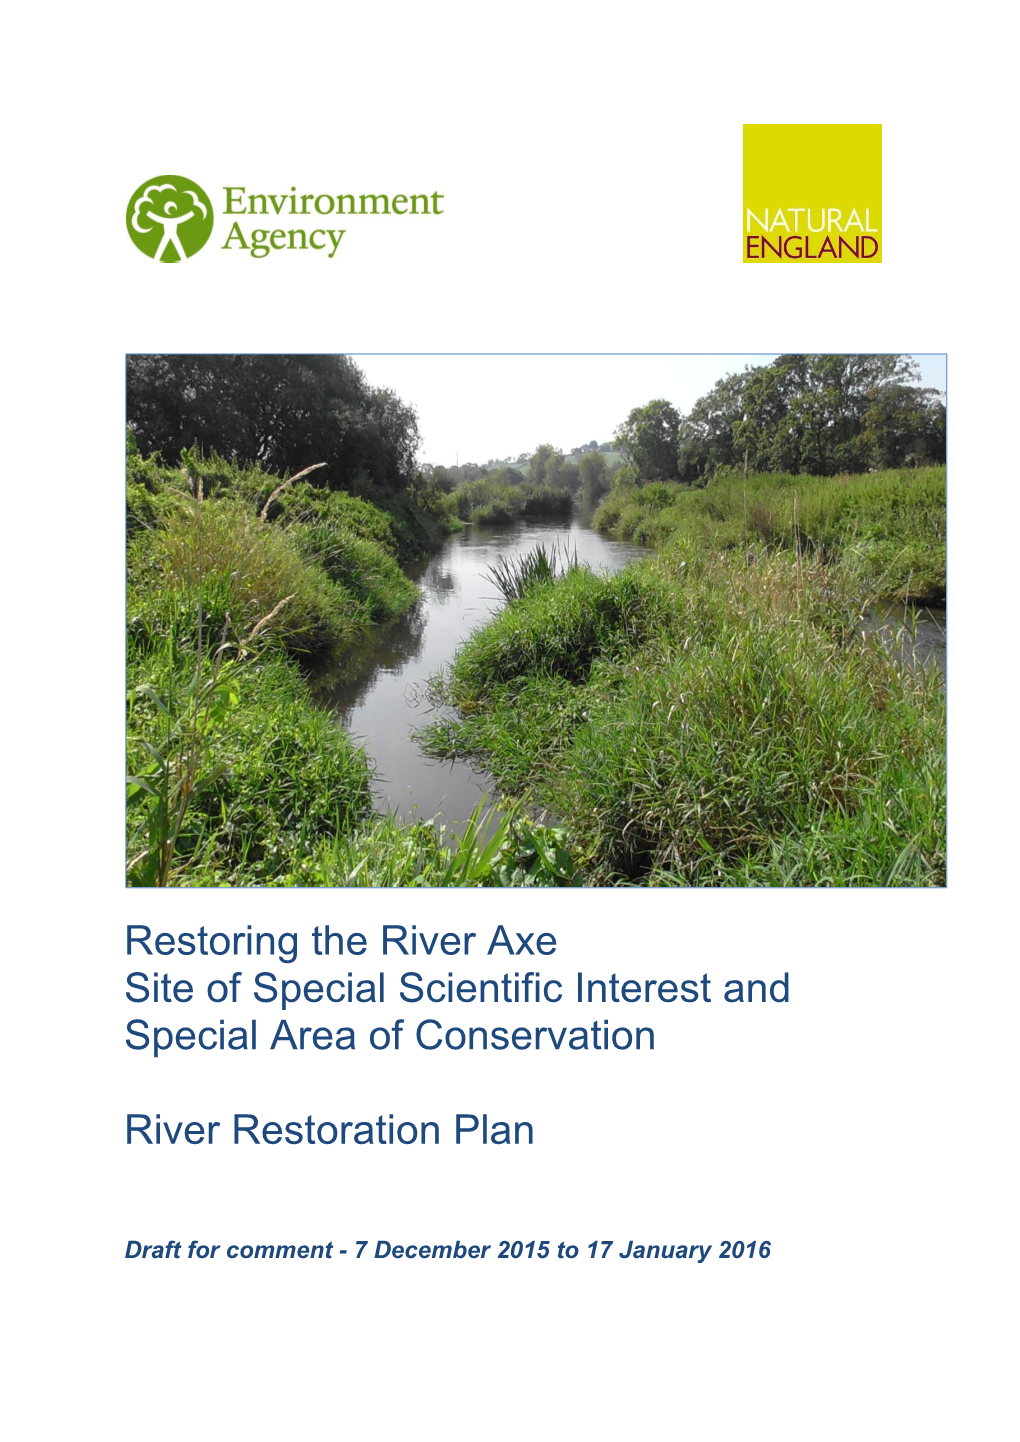 River Axe Draft Restoration Plan